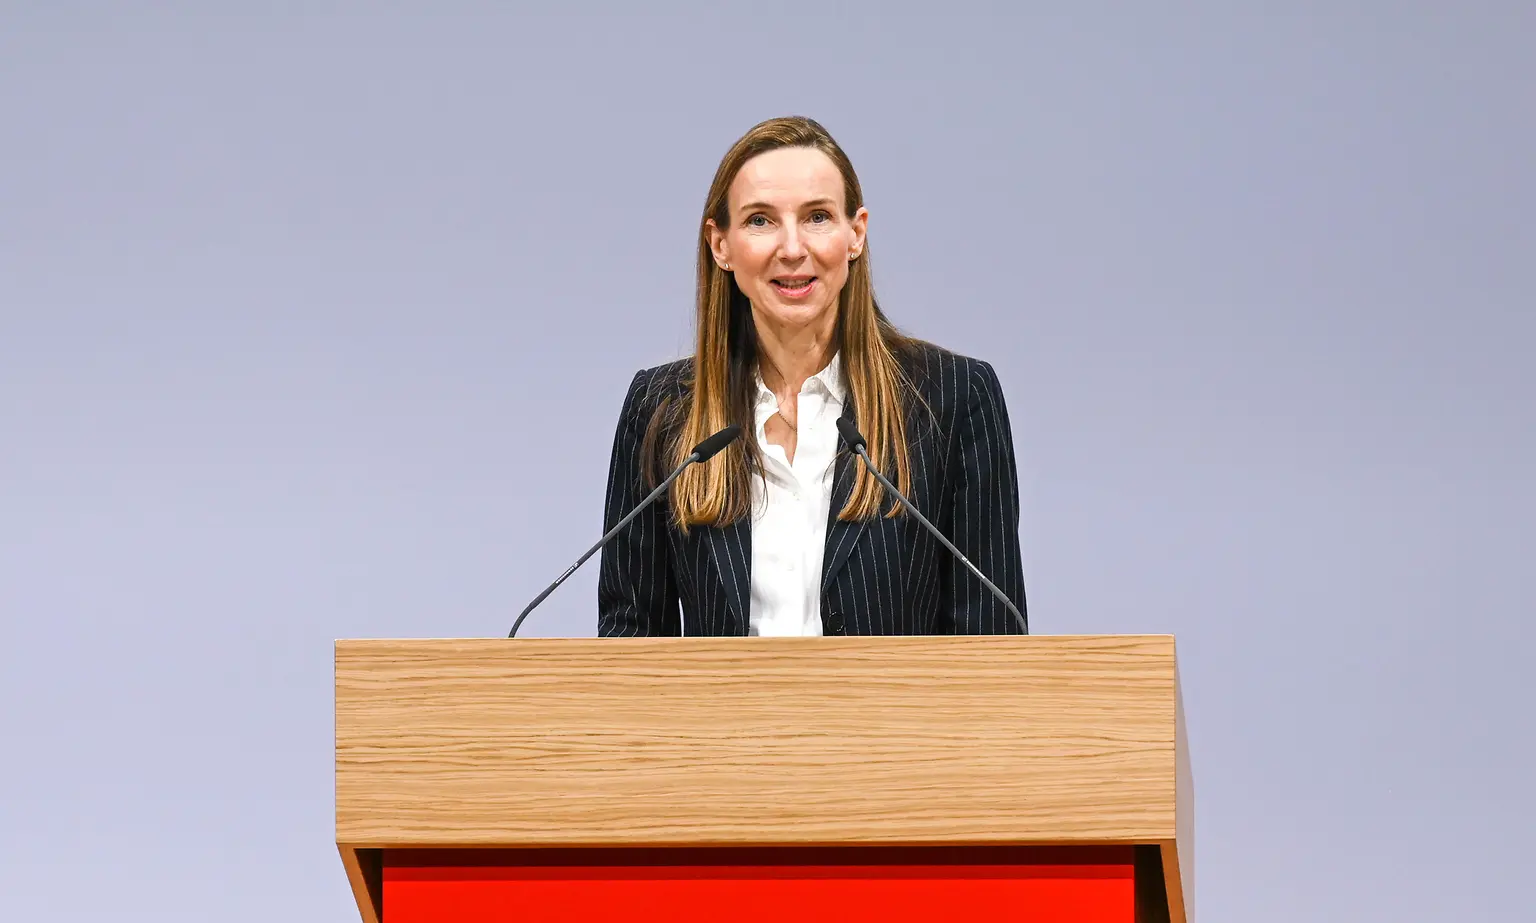 
Dr. Simone Bagel-Trah, Vorsitzende des Aufsichtsrats und Gesellschafterausschusses von Henkel